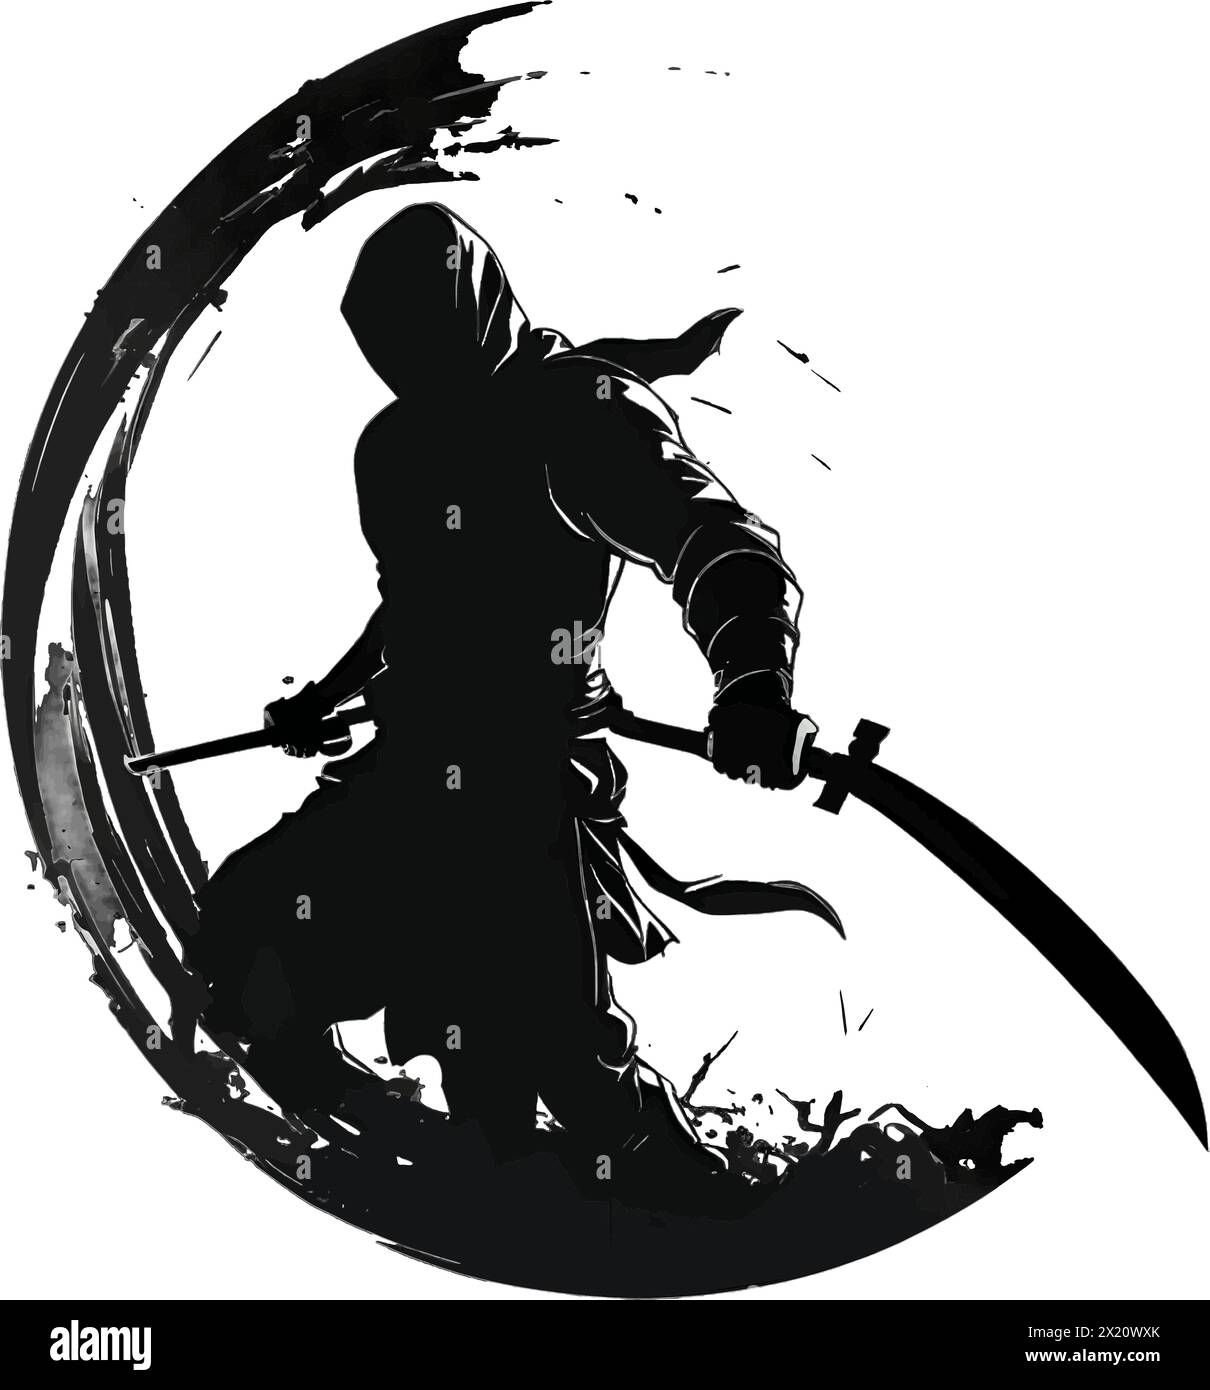 Illustration vectorielle de samouraï dans un cercle en silhouette noire sur un fond blanc propre, capturant des formes gracieuses. Illustration de Vecteur